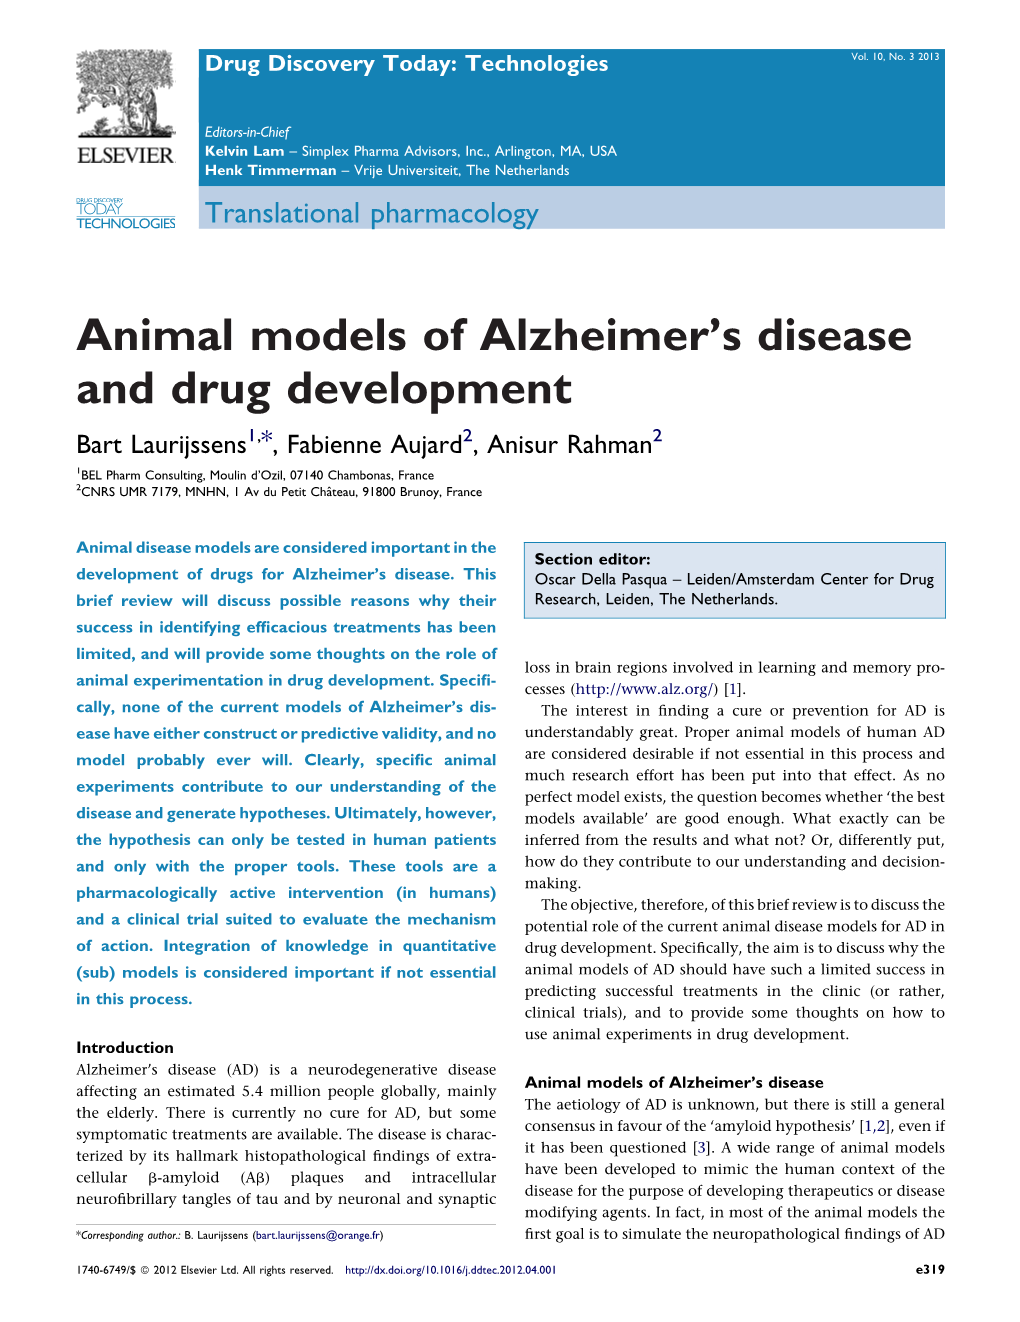 Animal Models of Alzheimer's Disease and Drug Development